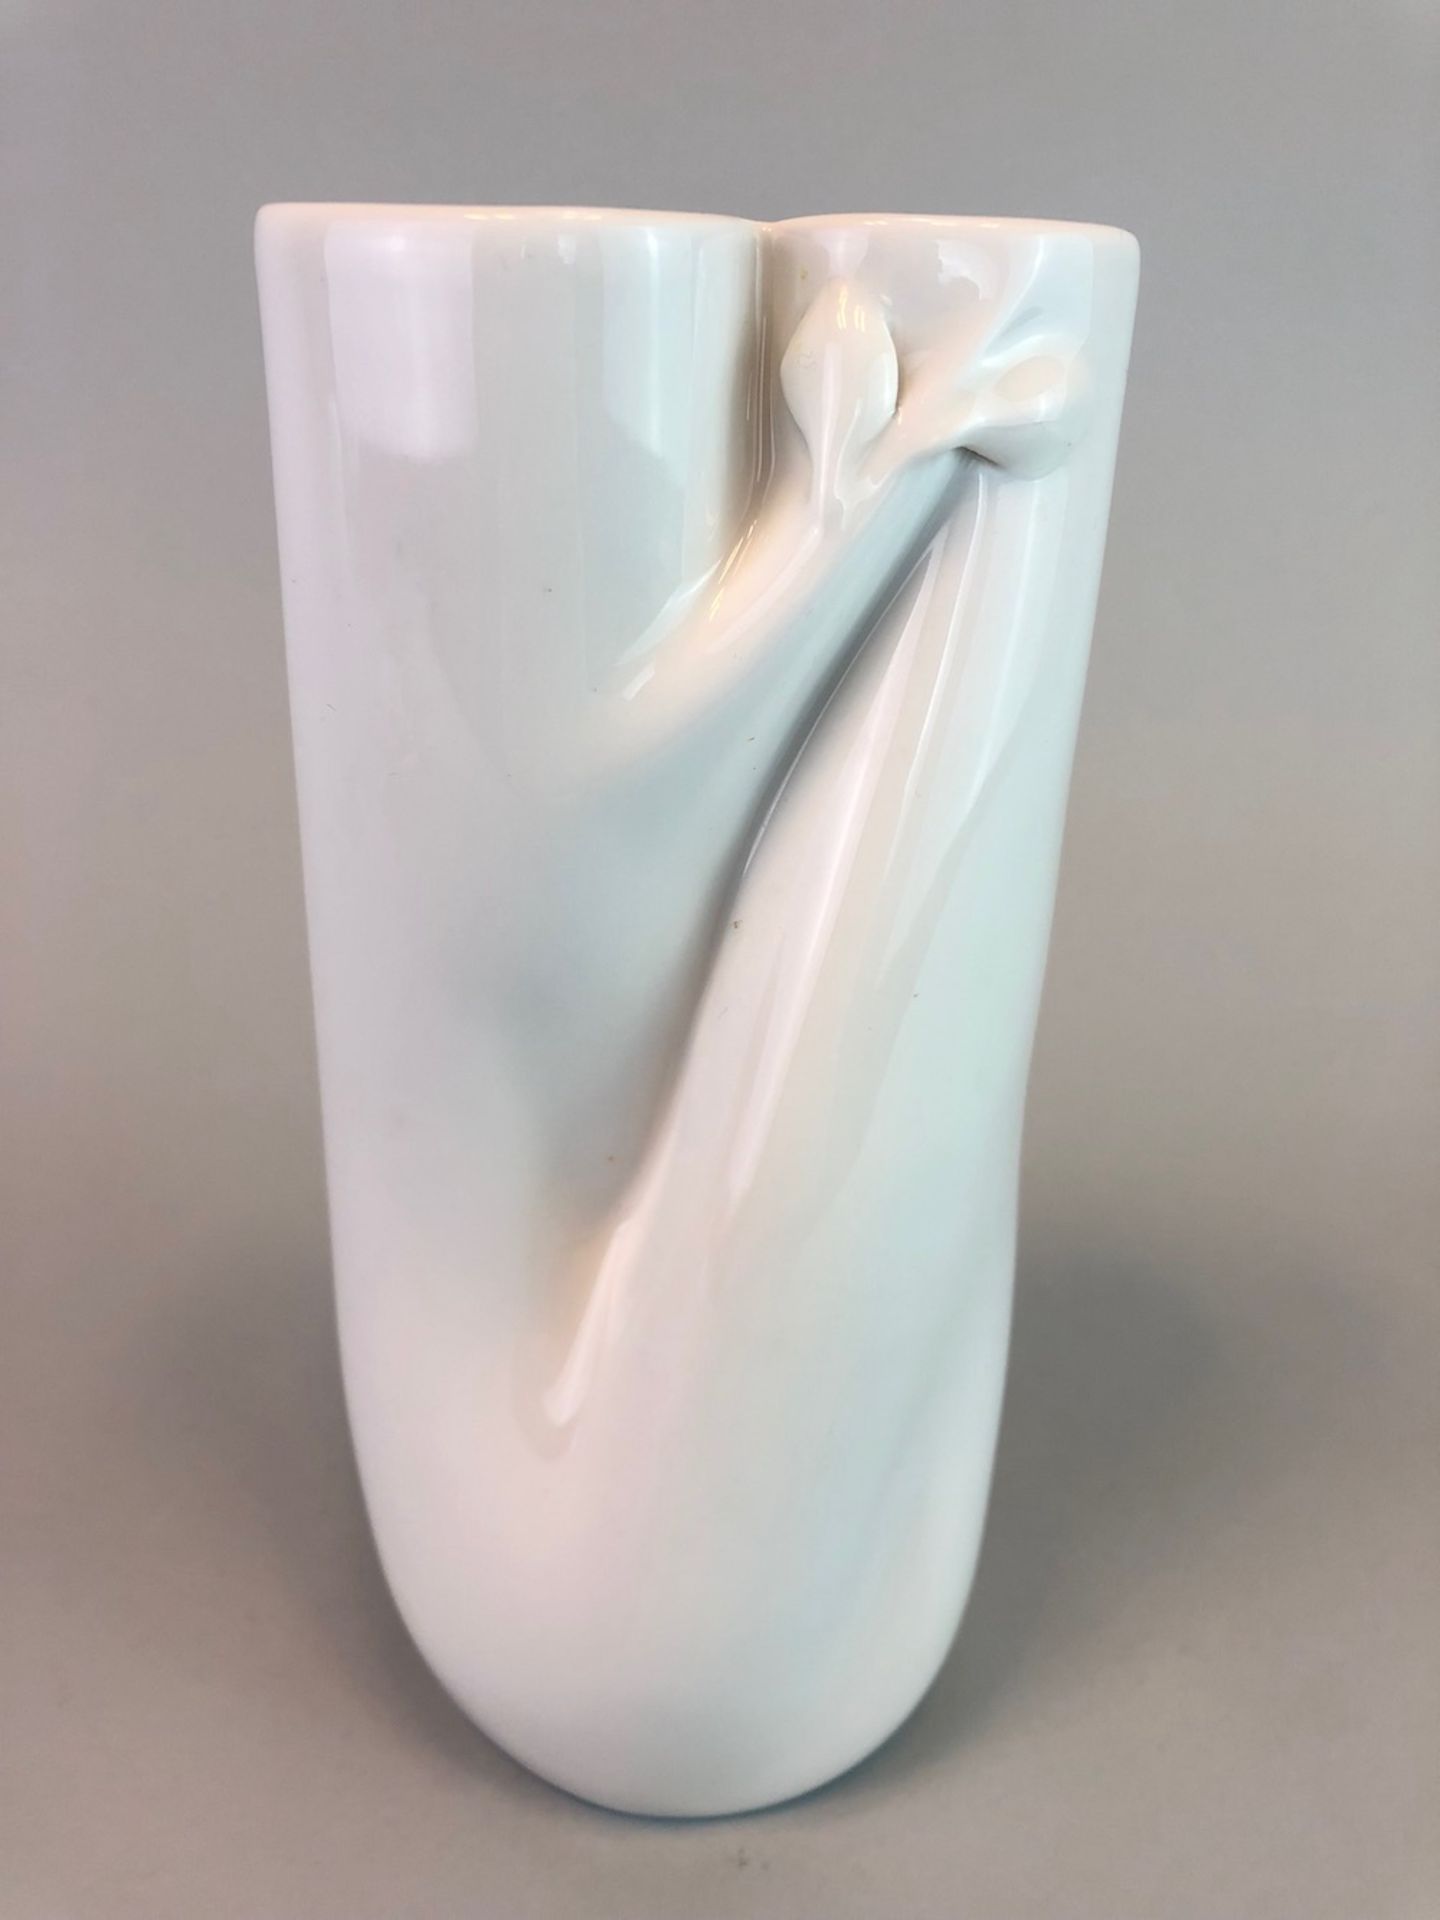 Designer-Vase: Meissen Porzellan.Vase mit herausgearbeitetem Ast / Zweig, H 20 cm. Schwertermarke